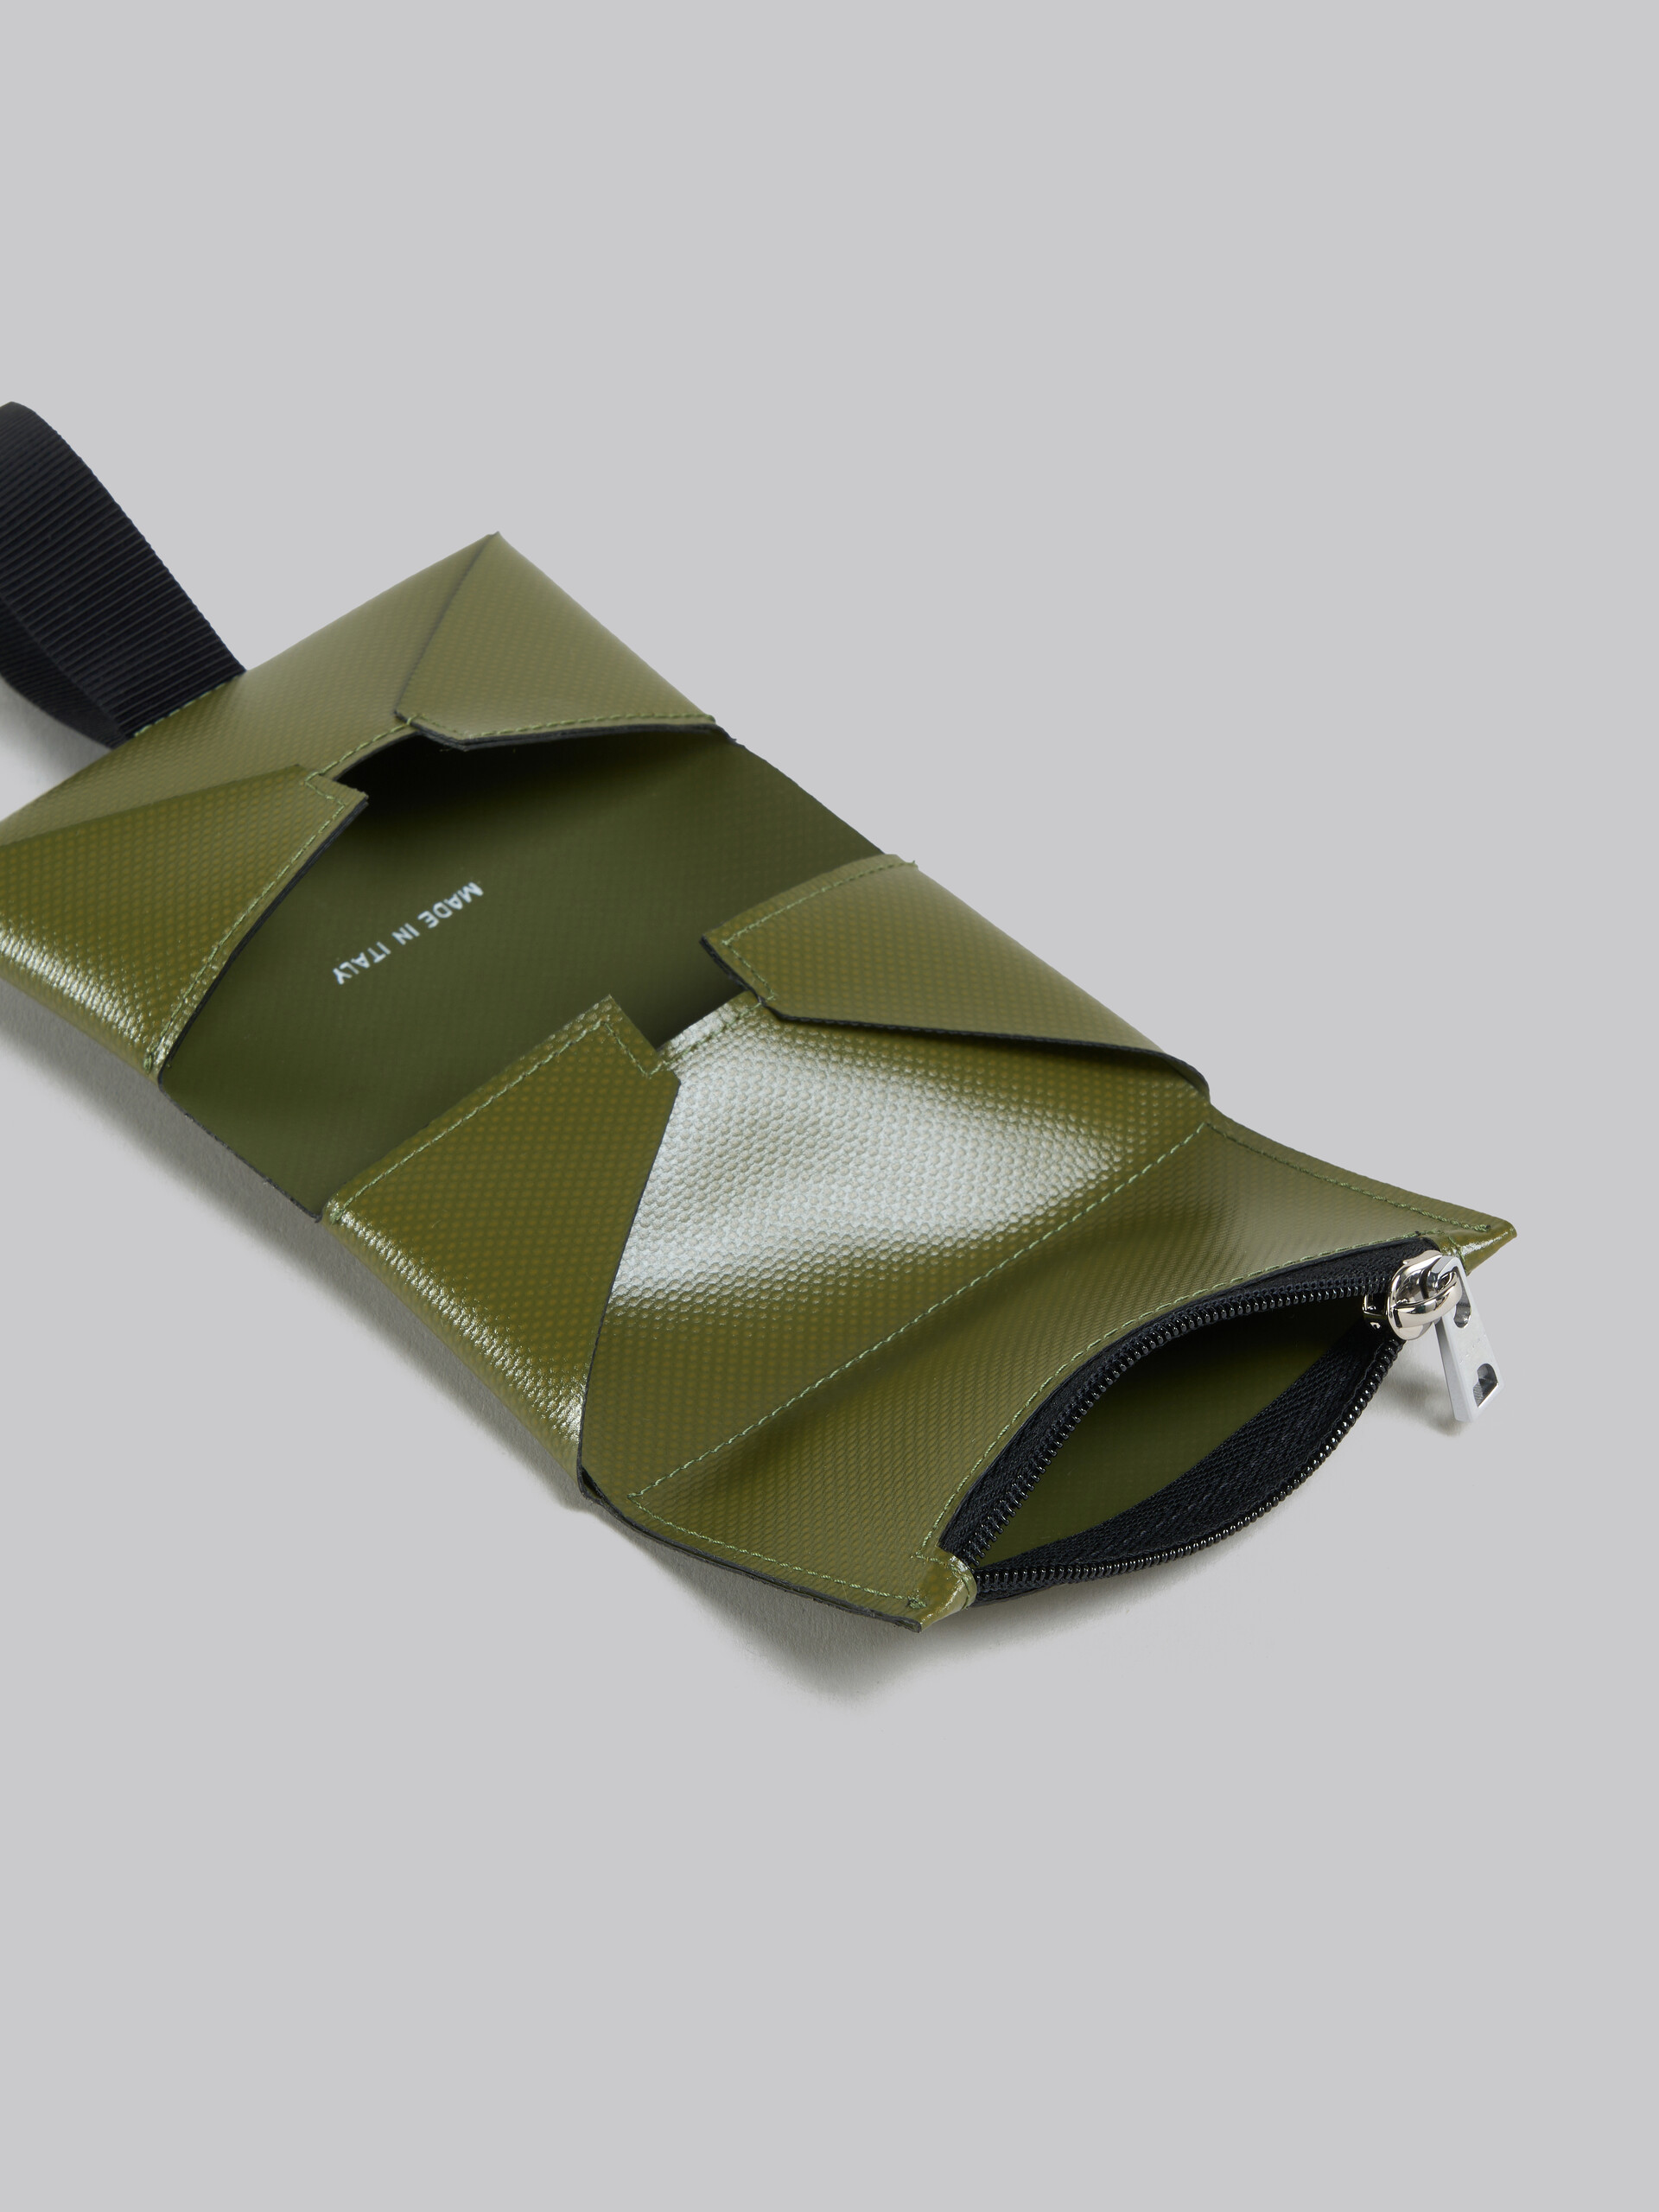 Portafoglio tri-fold nero con cinturino logato - Portafogli - Image 2